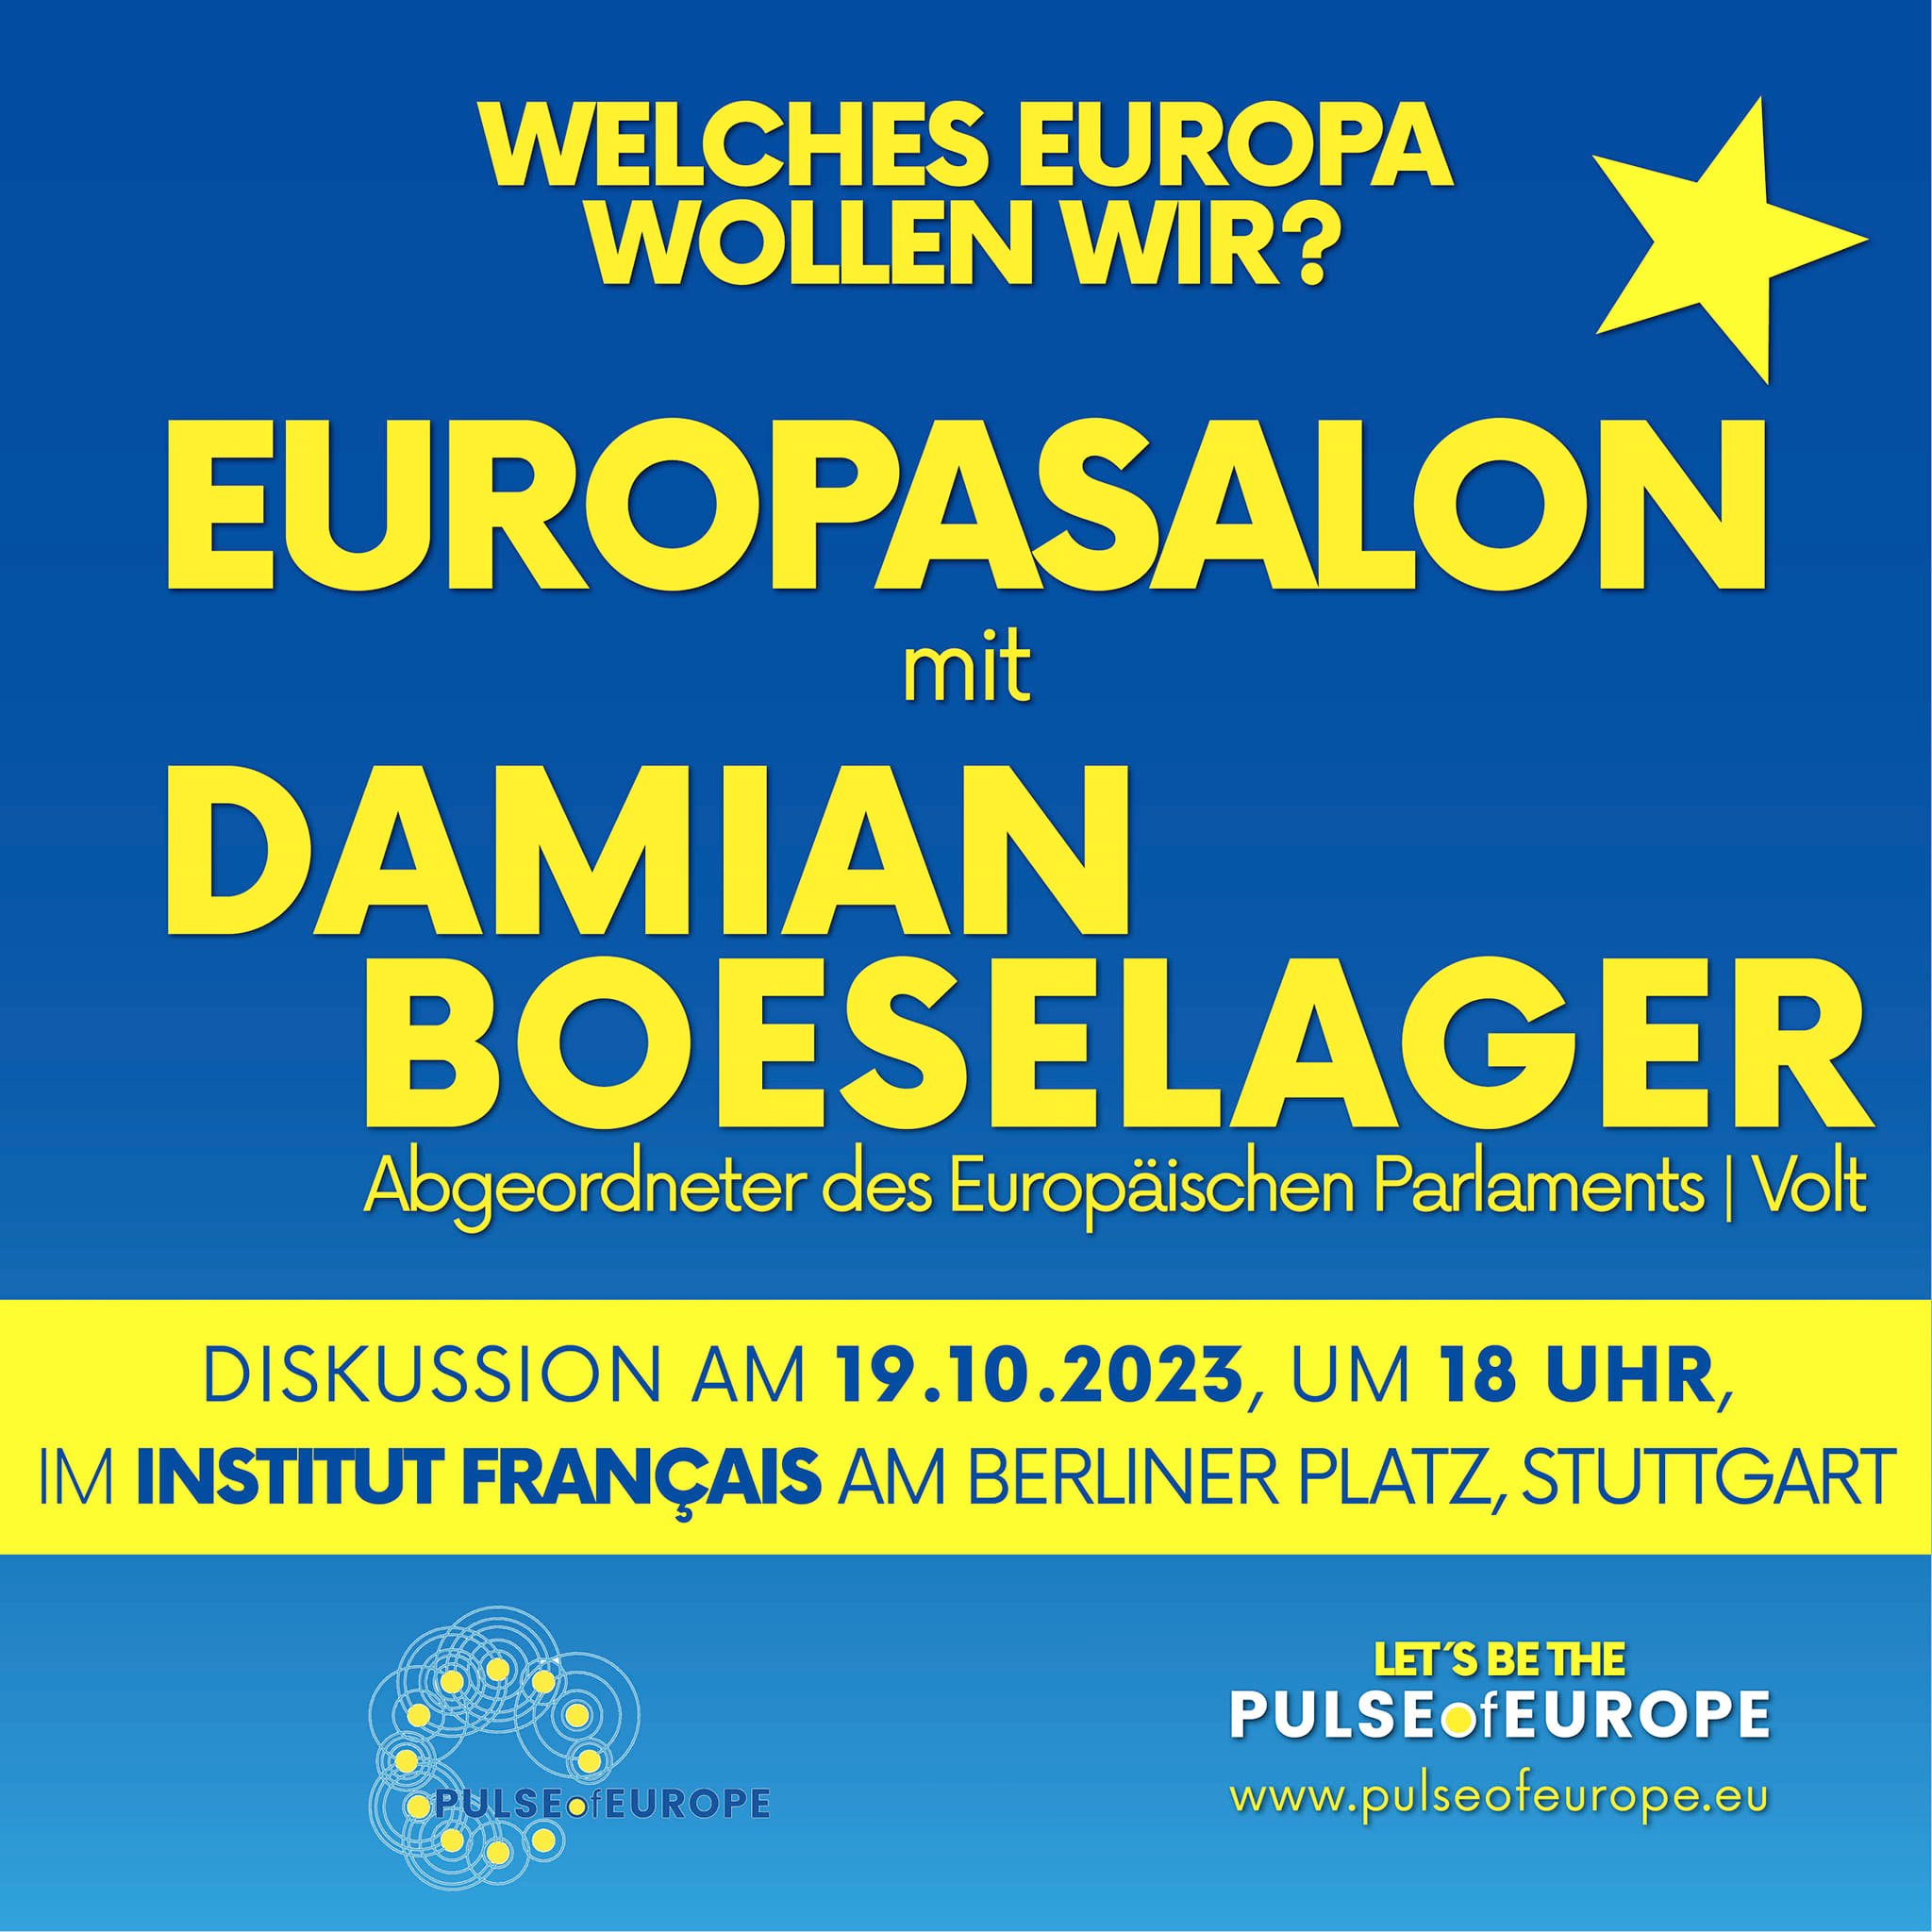 EuropaSalon in Stuttgart mit EU-Parlamentarier Damian Boeselager